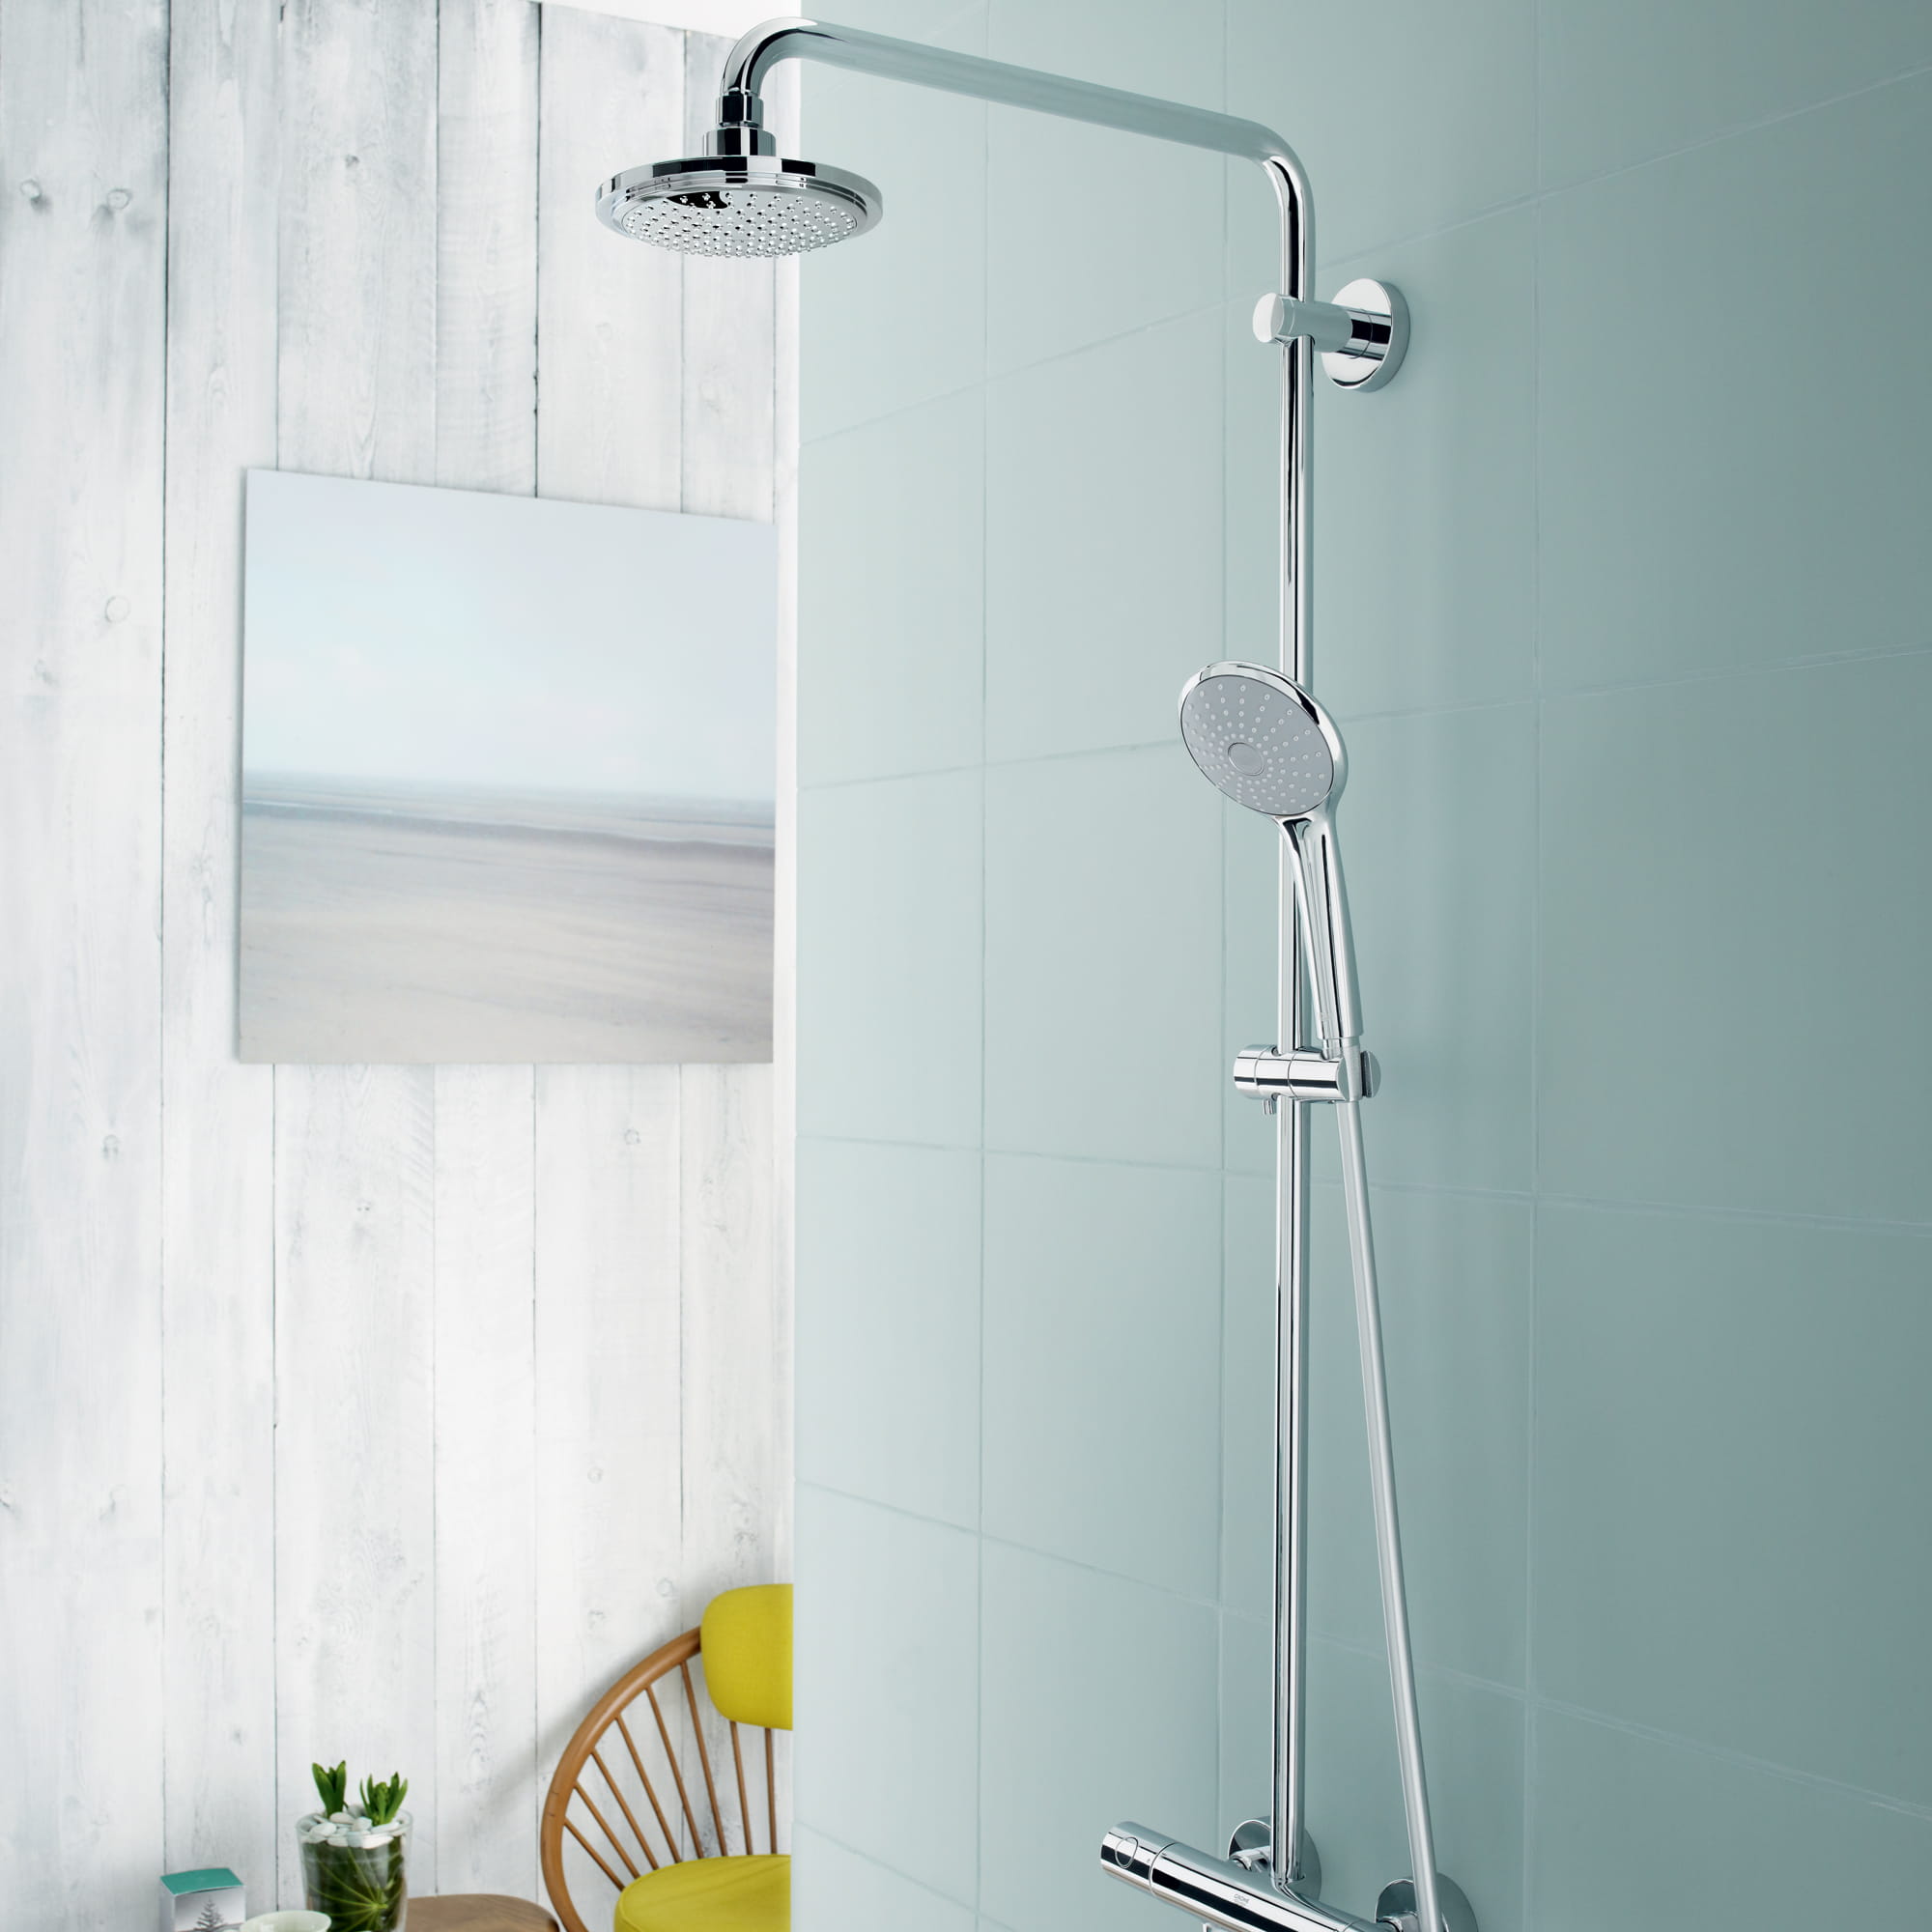 système de douche d'euphorie avec la douche de main, mur de douche en verre teinté vert - mur en bois gris de panneau à l'arrière-plan